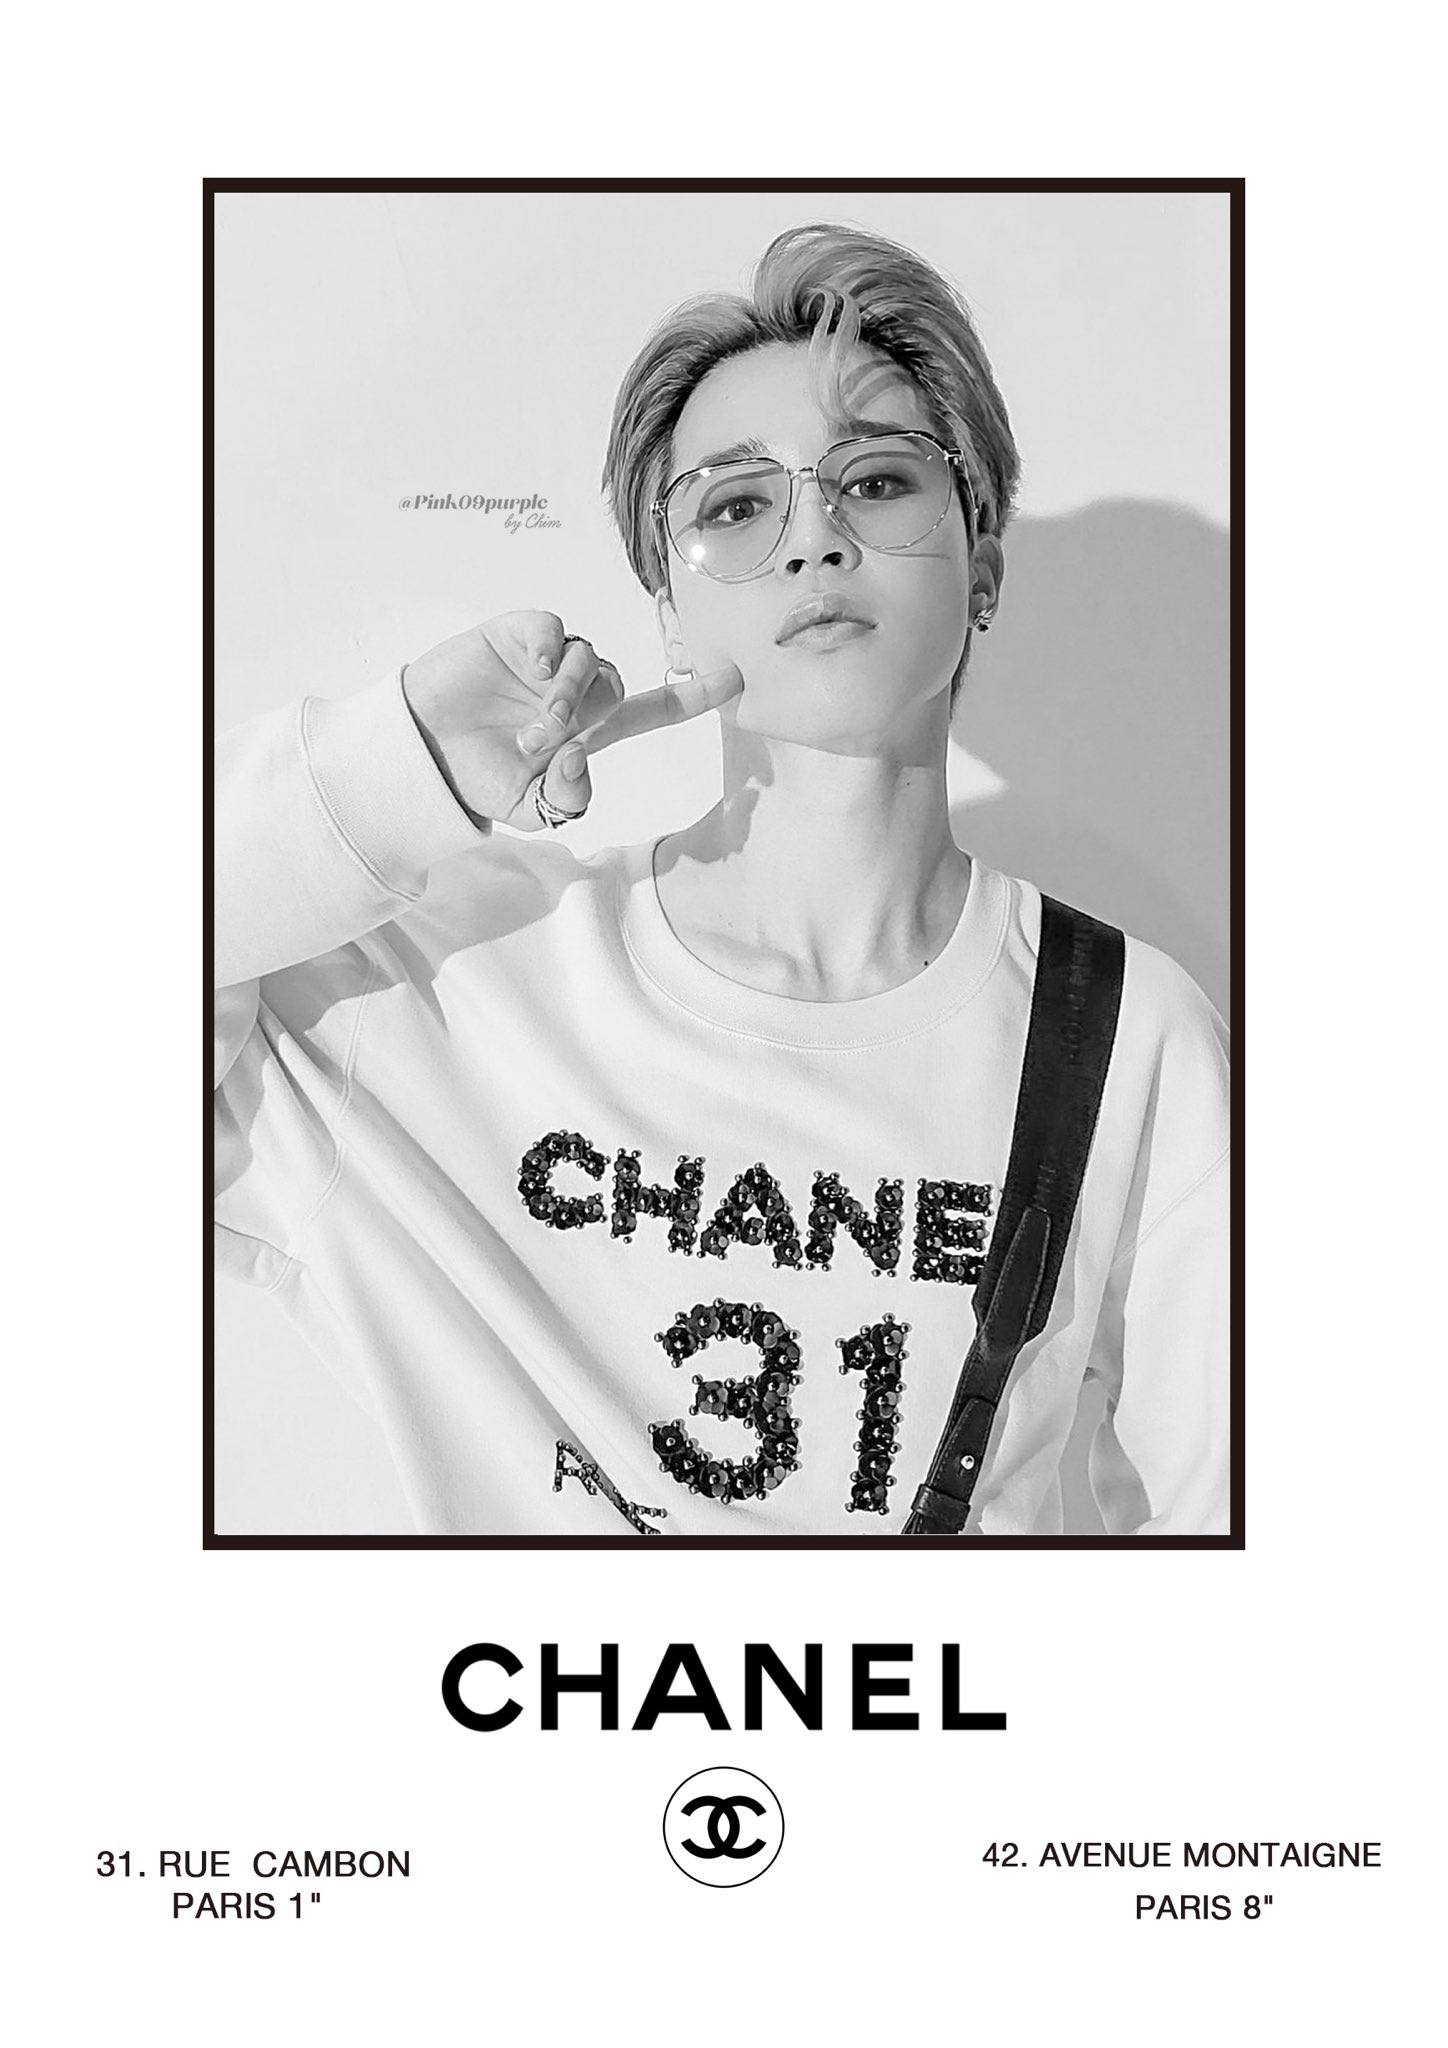 𝐂𝐡𝐢𝐦 ʲⁱᵐⁱⁿ Chanel Jimin 高画質を載せる前に Chanelは私も1番のご贔屓ブランドなのでvintage Ad風にしちゃった ホーム画面サイズはフォロワーﾆﾑ限定 にアップしました 保存の際はrt いいねをお願いできると嬉しいです